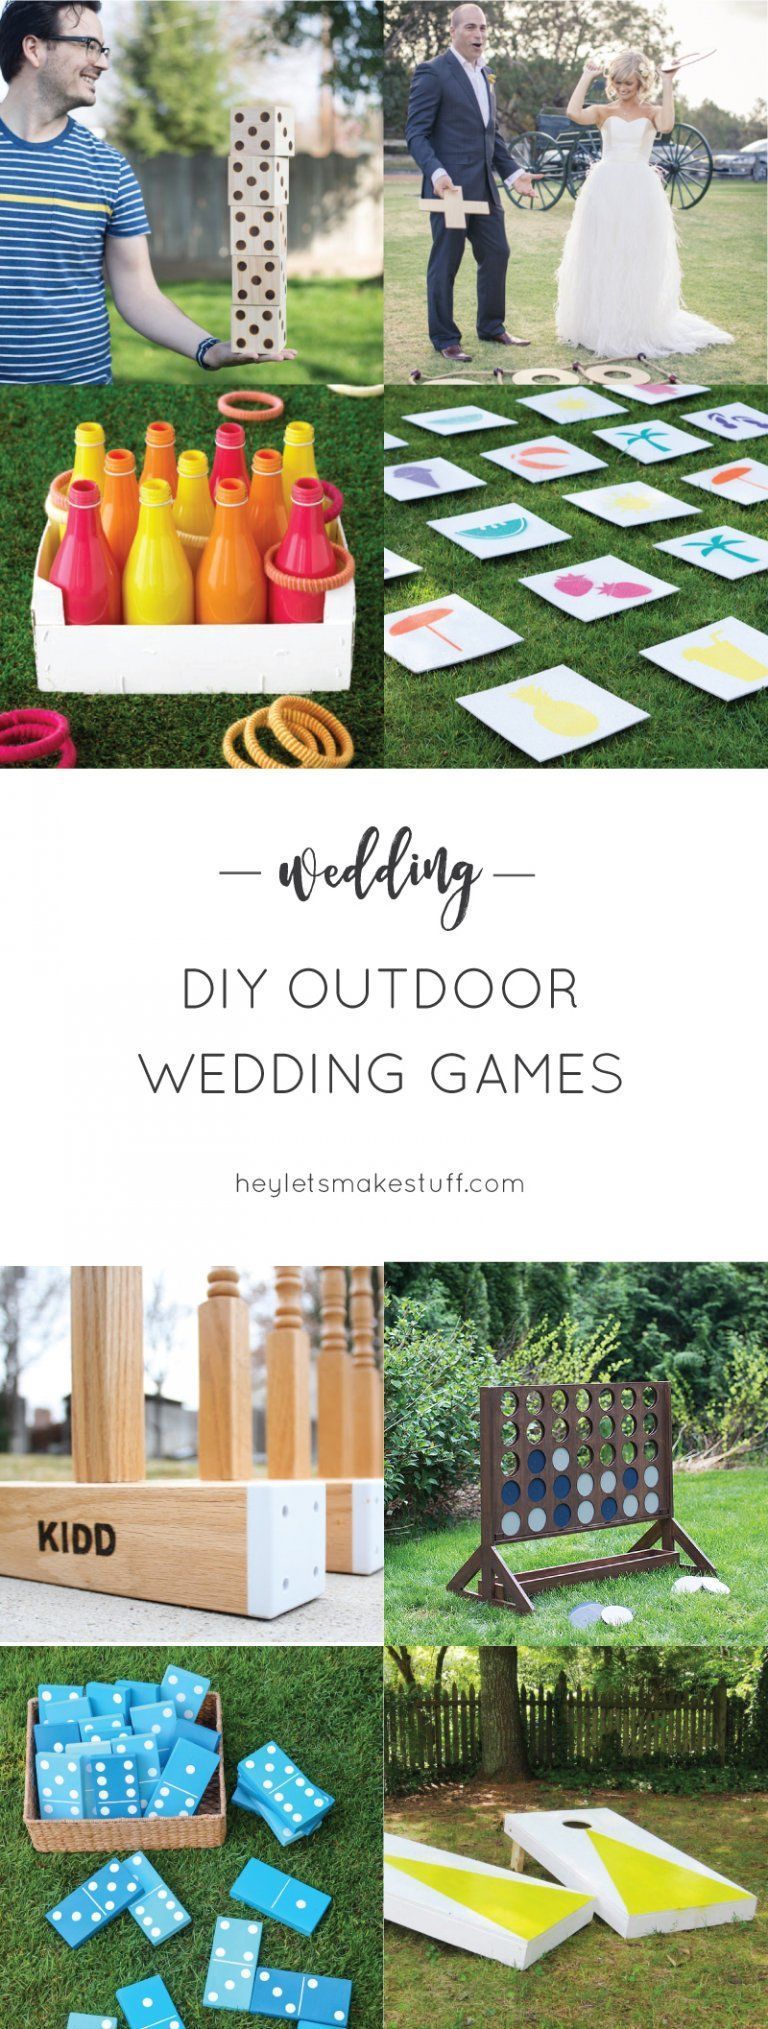 DIY Outdoor Wedding Games -   17 wedding Party games ideas